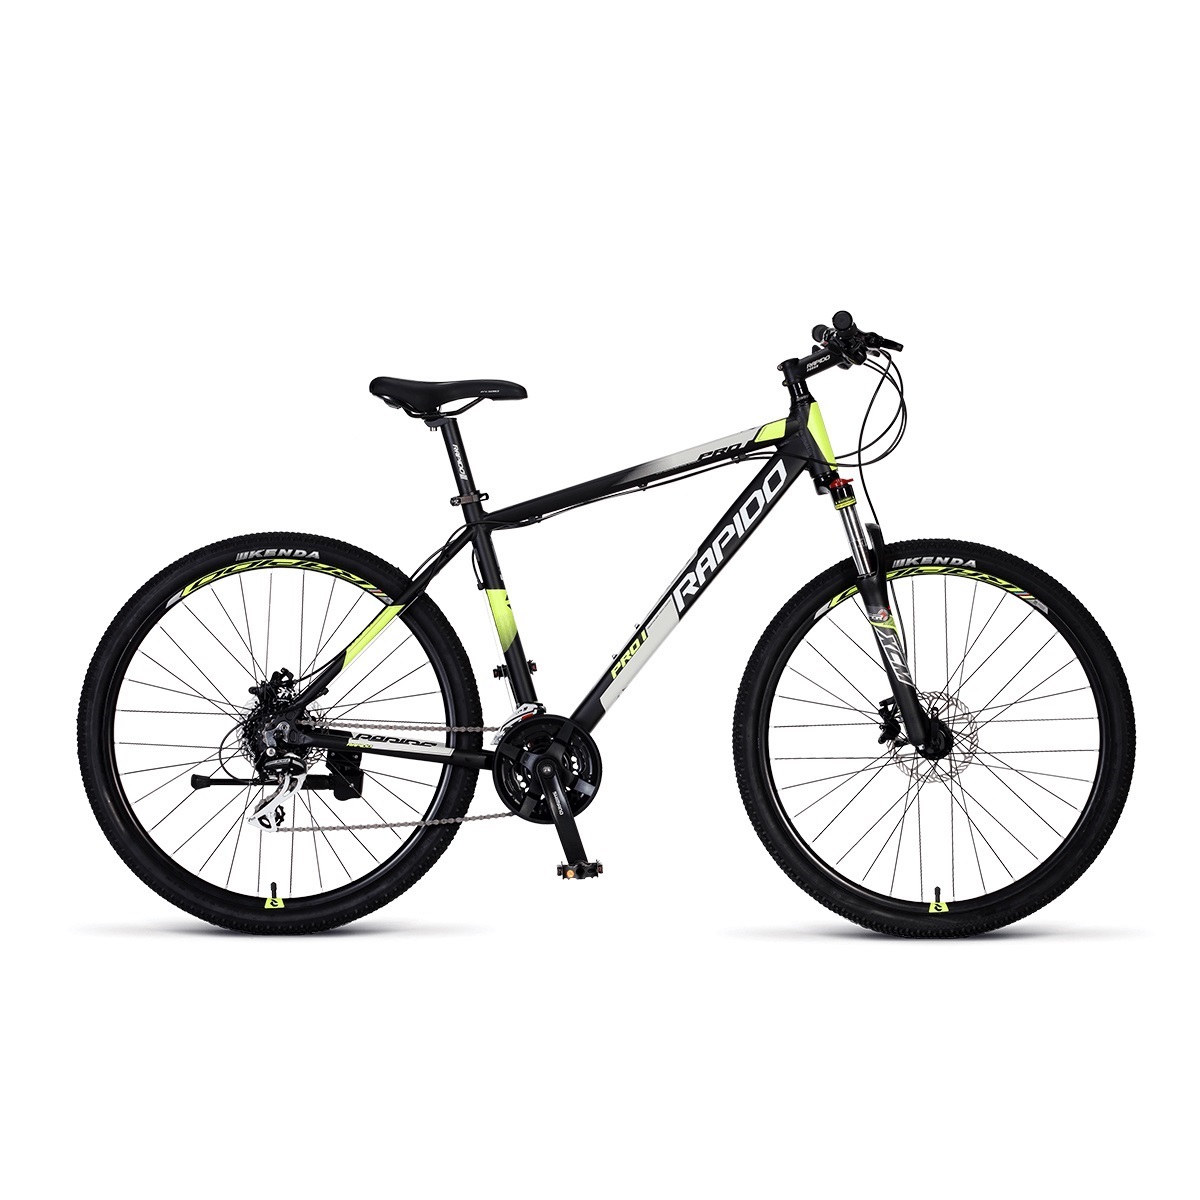 نکته خرید - قیمت روز دوچرخه کوهستان راپیدو مدل PRO 1 سایز 29 خرید